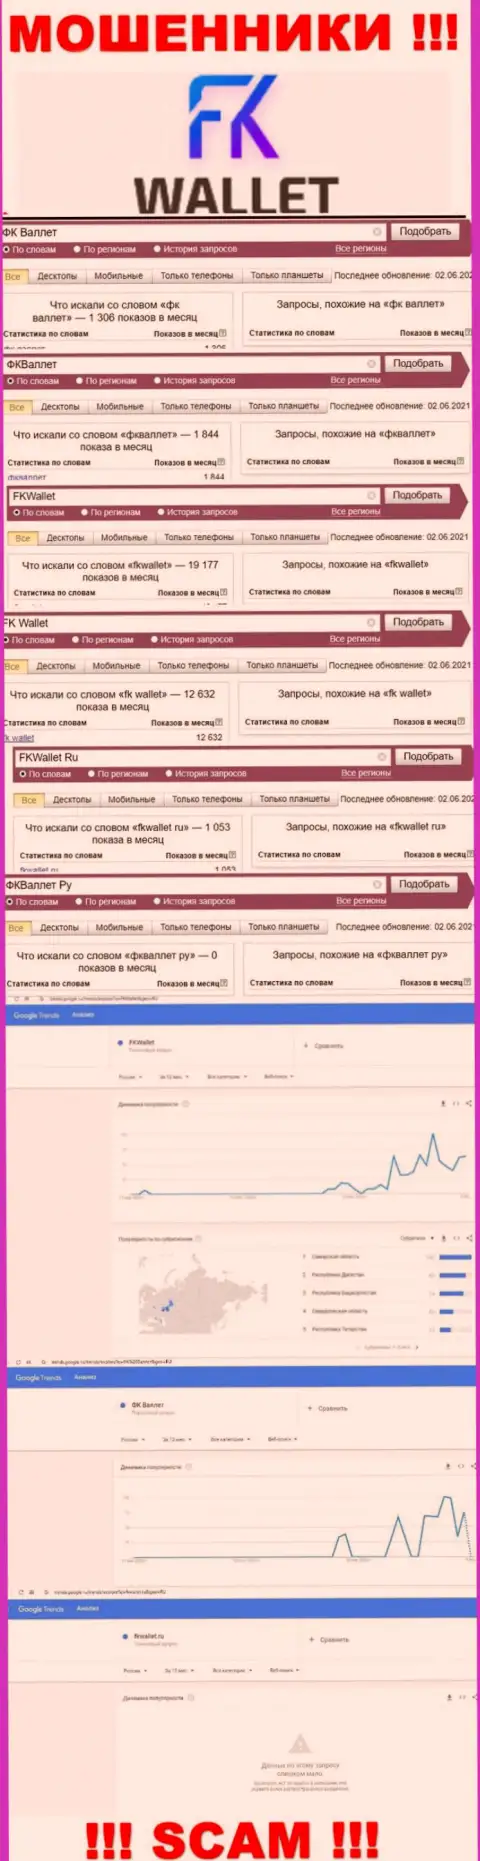 Скриншот статистических показателей онлайн-запросов по противоправно действующей компании FK Wallet